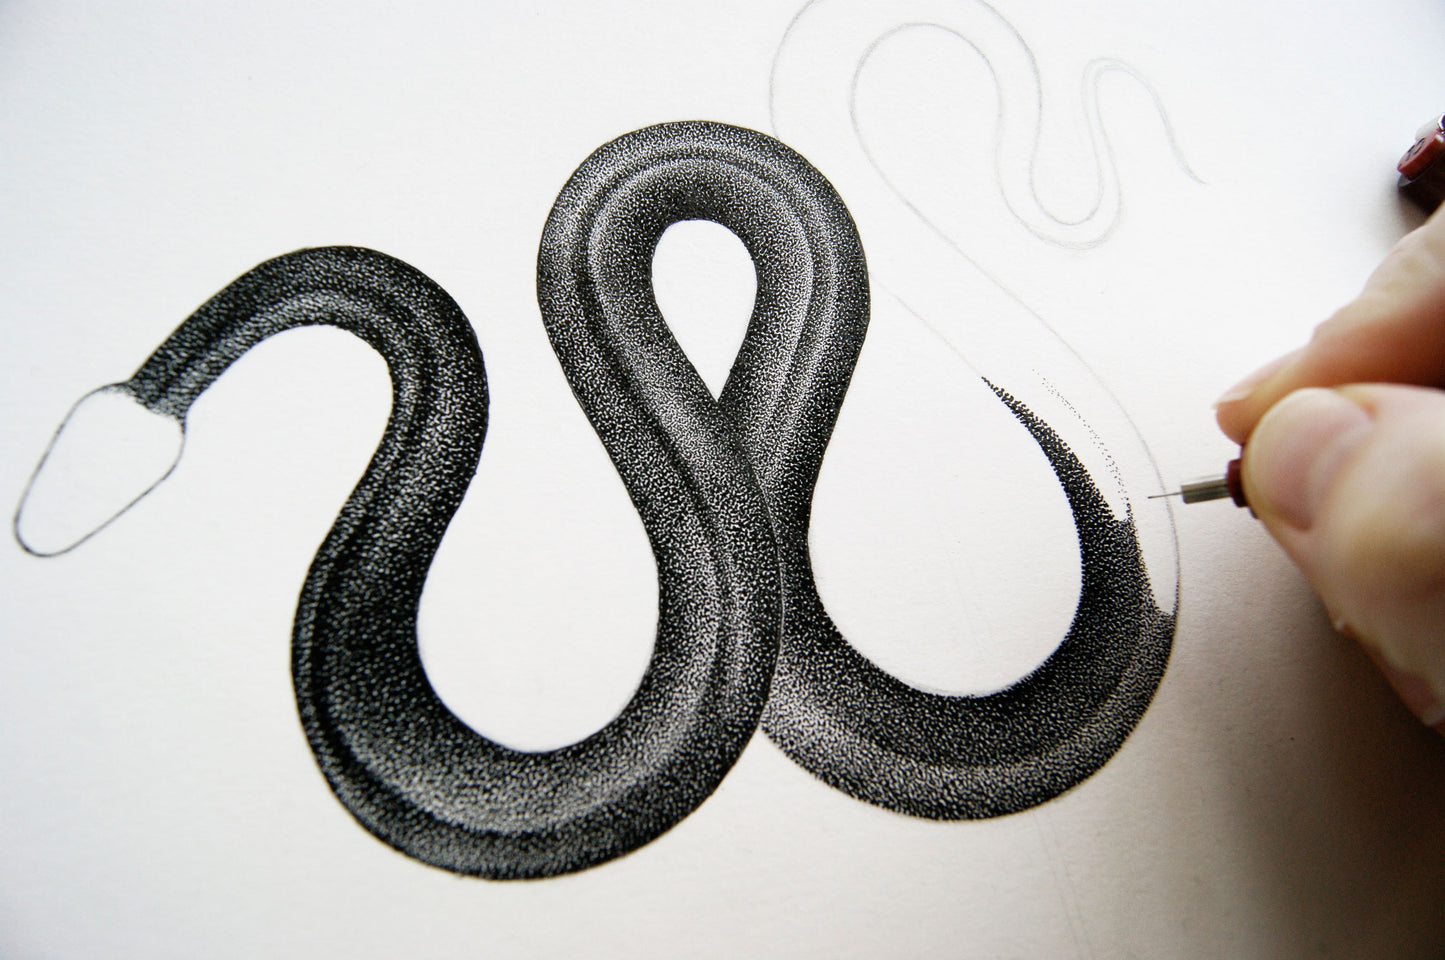 Snake - Original drawing